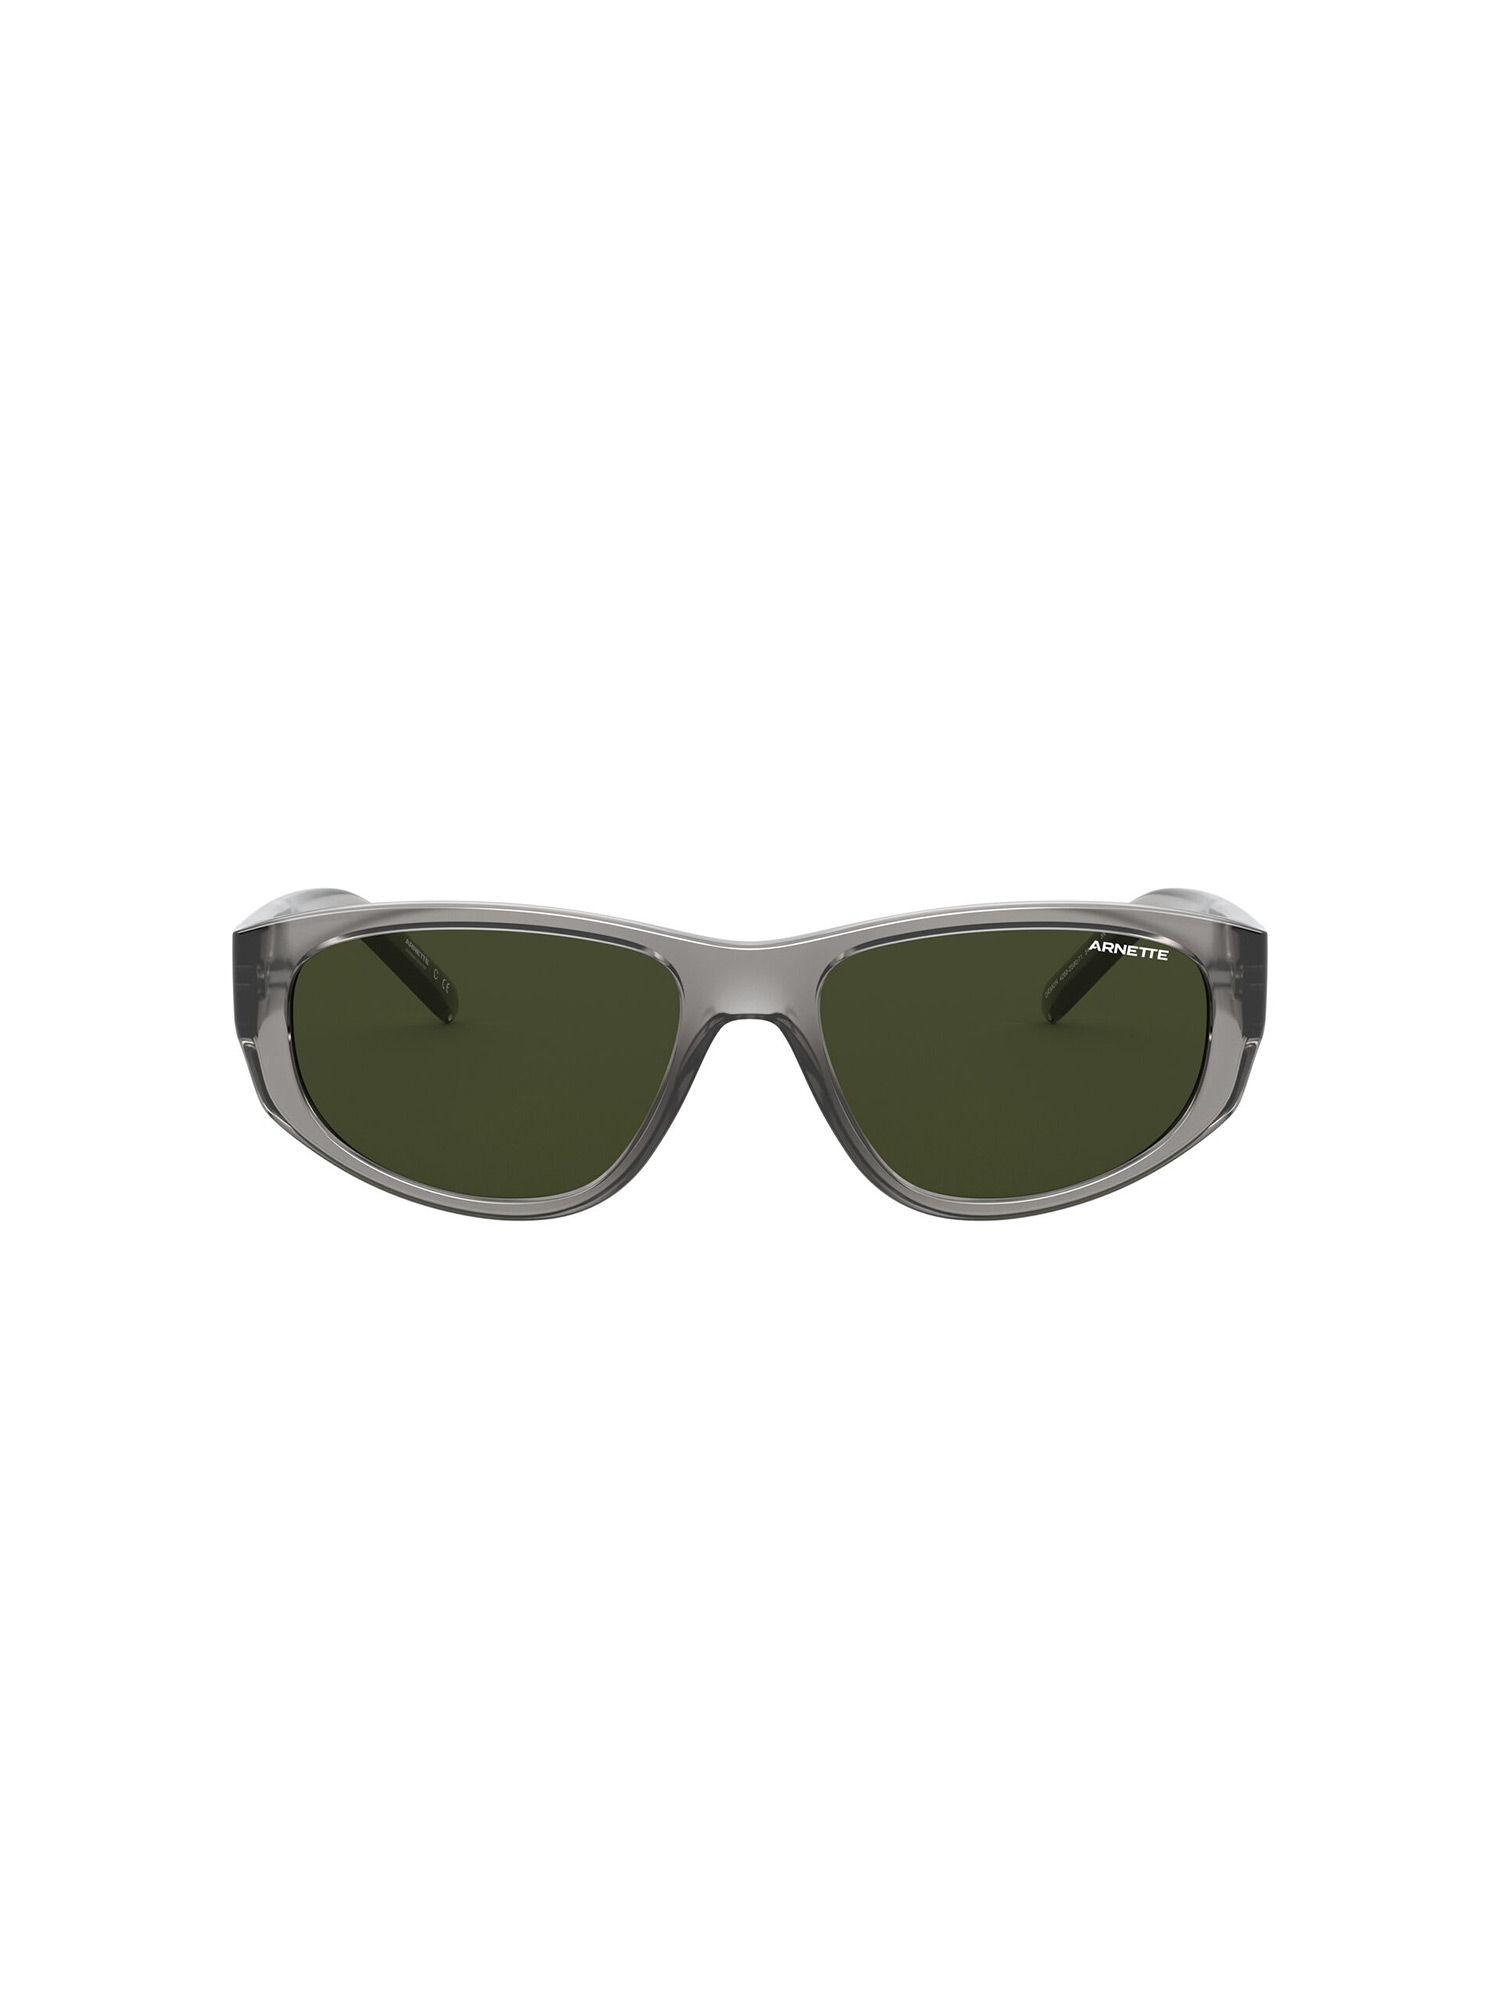 0an4269 space explorer dark green lens irregular male sunglasses